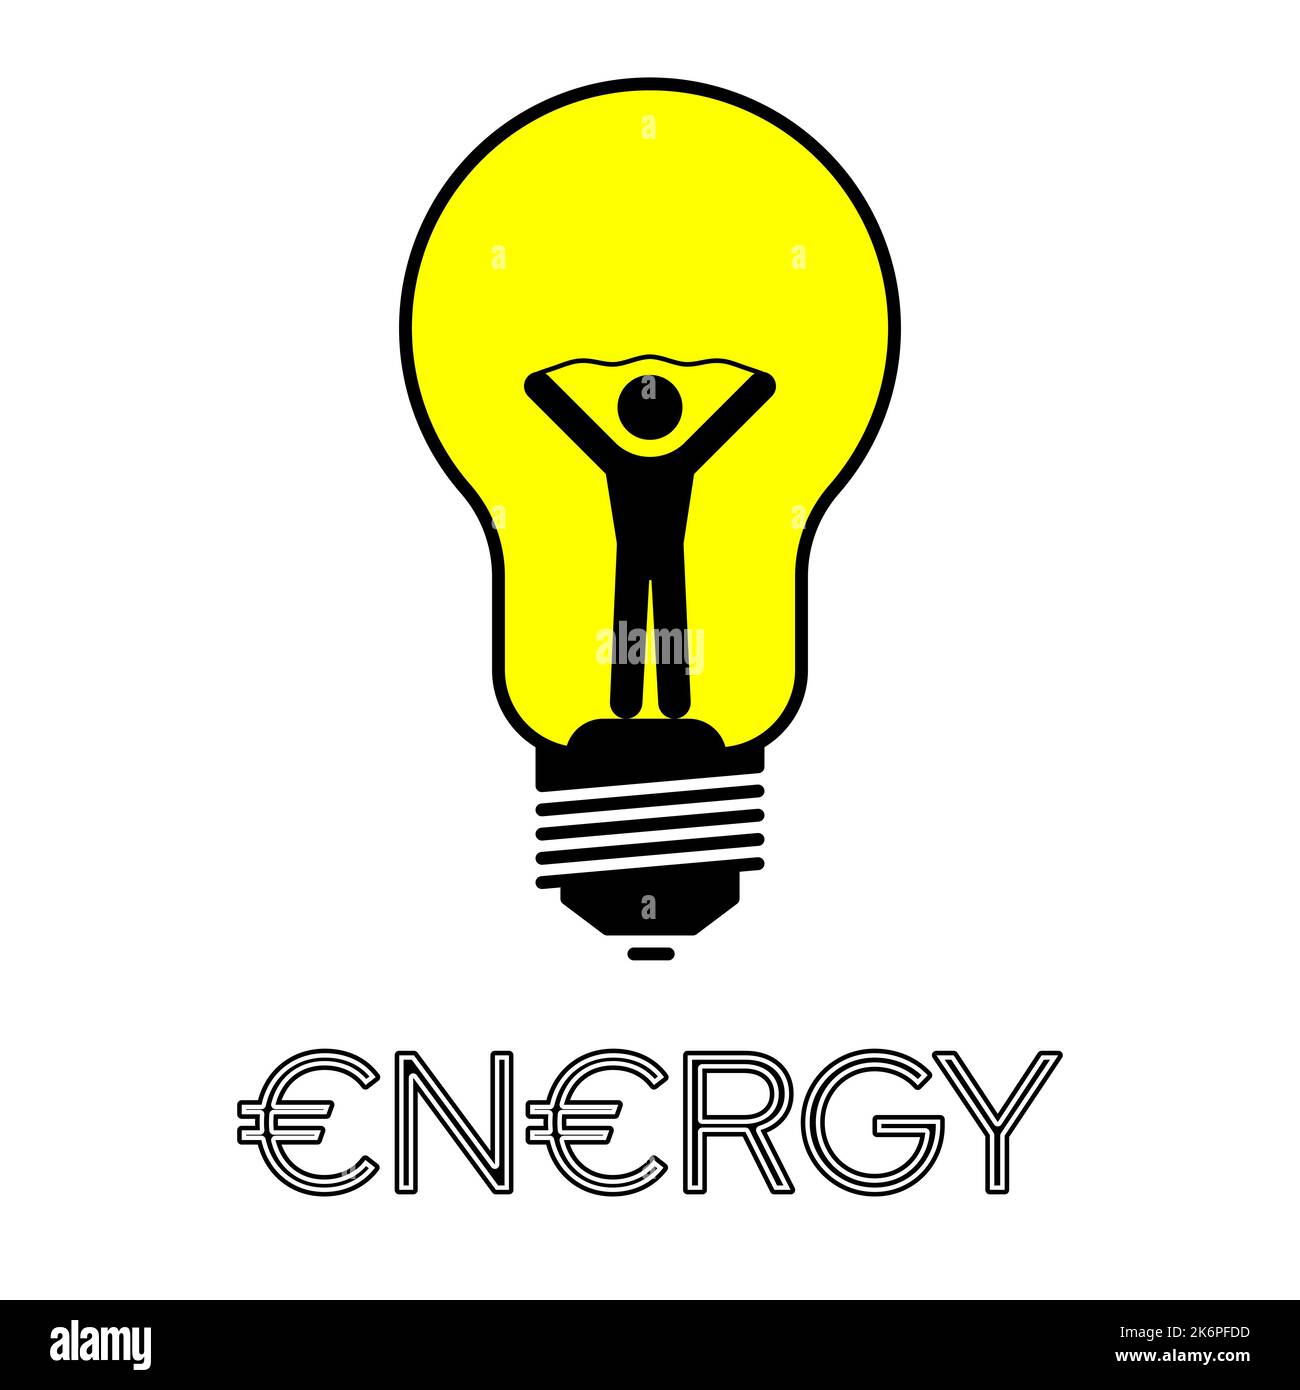 Vitalität, Energie, helle Idee Konzept. Menschliche Ikone in einer Glühbirne. Vektorgrafik Stock Vektor